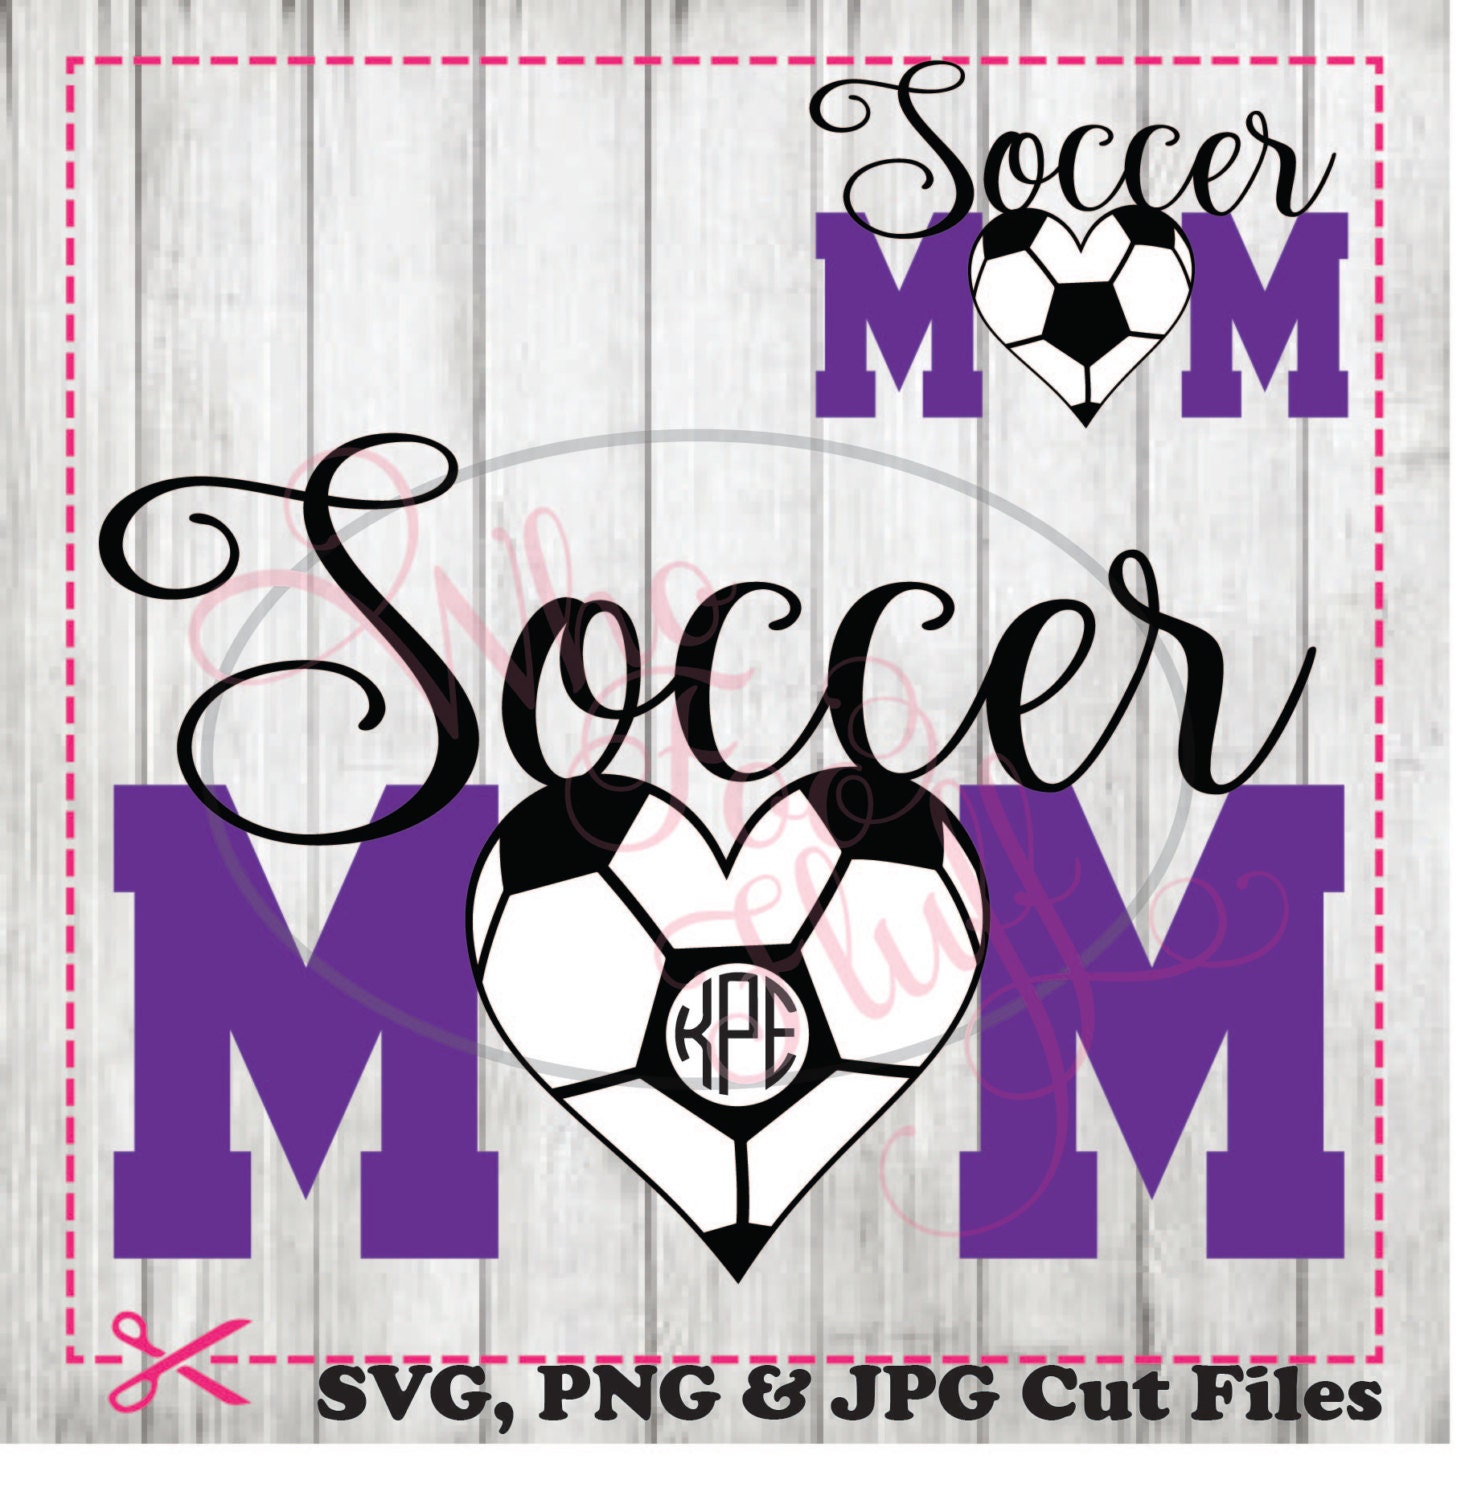 Download Soccer Mom Monogram svg png jpg cutting file Soccer